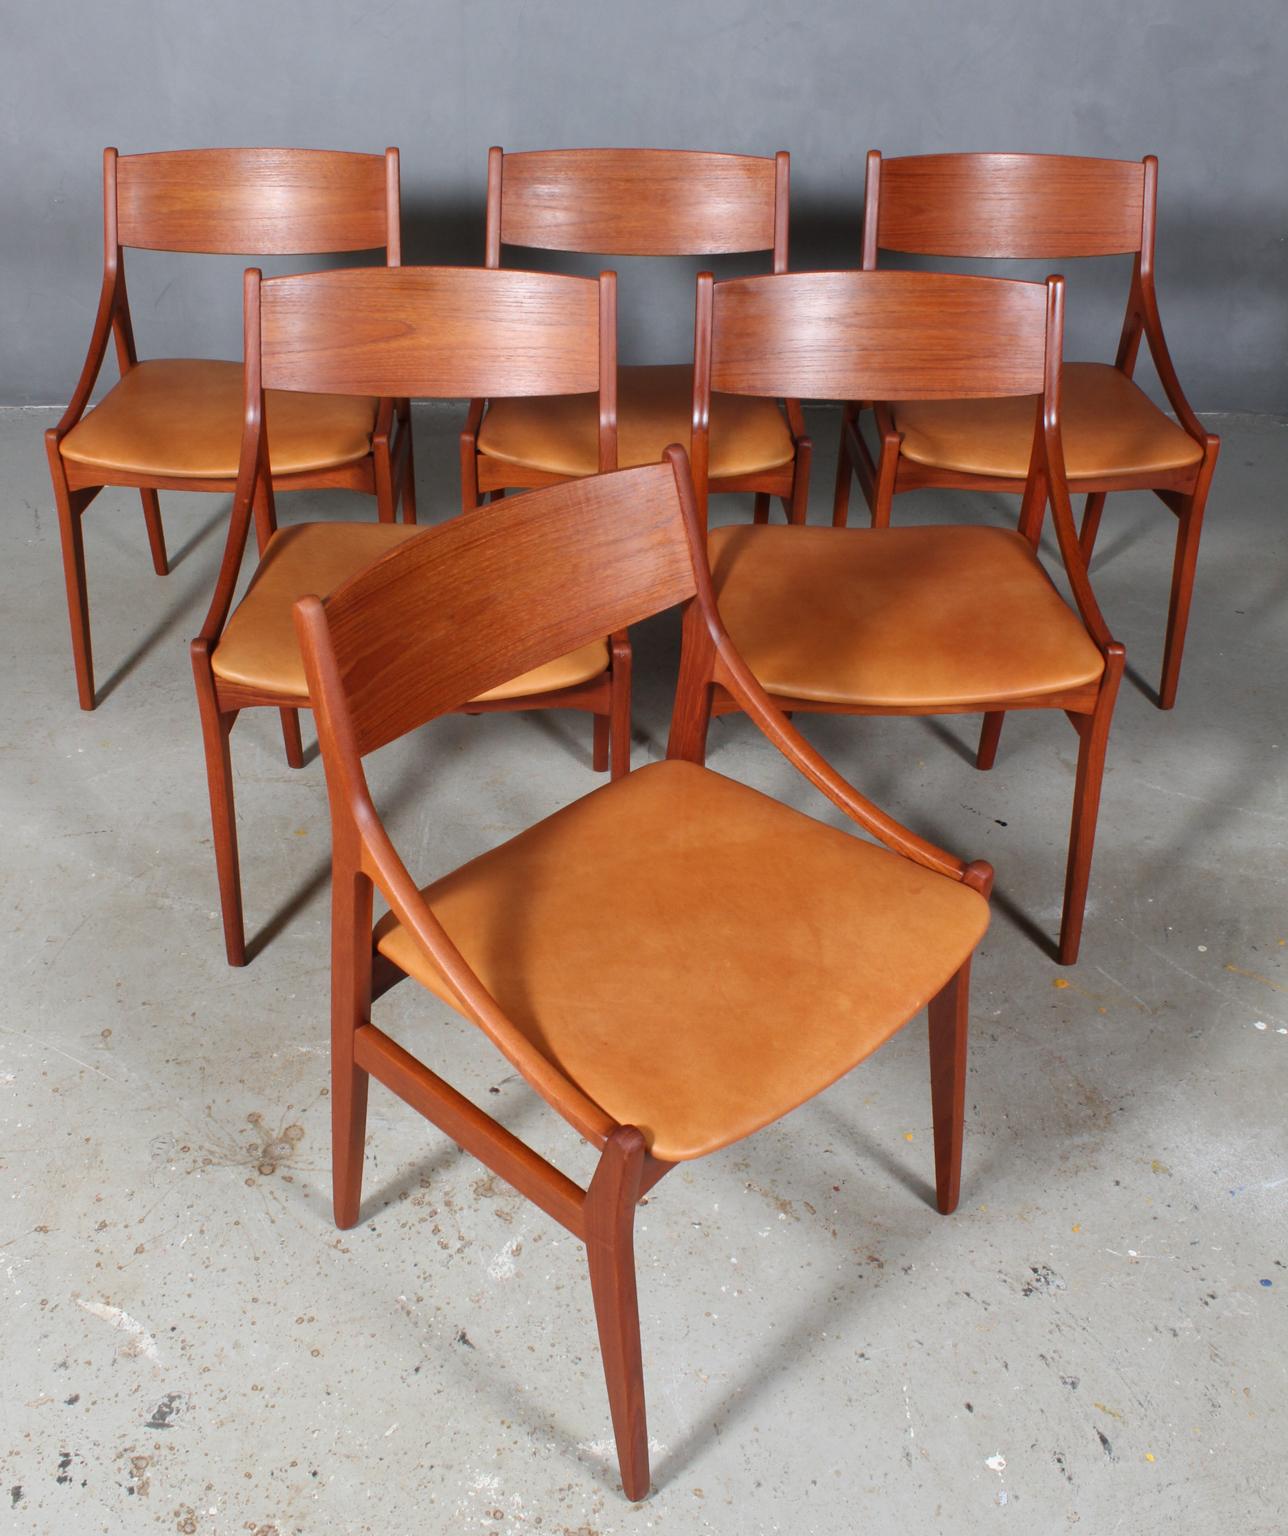 Vestervig Eriksen set of six dining chairs in partly solid teak. 

Seats new upholstered with tan vintage aniline leather.

Made by Brdr. Tromborg’s Eftf., Møbelfabrik Vestervig Eriksen Aarhus.